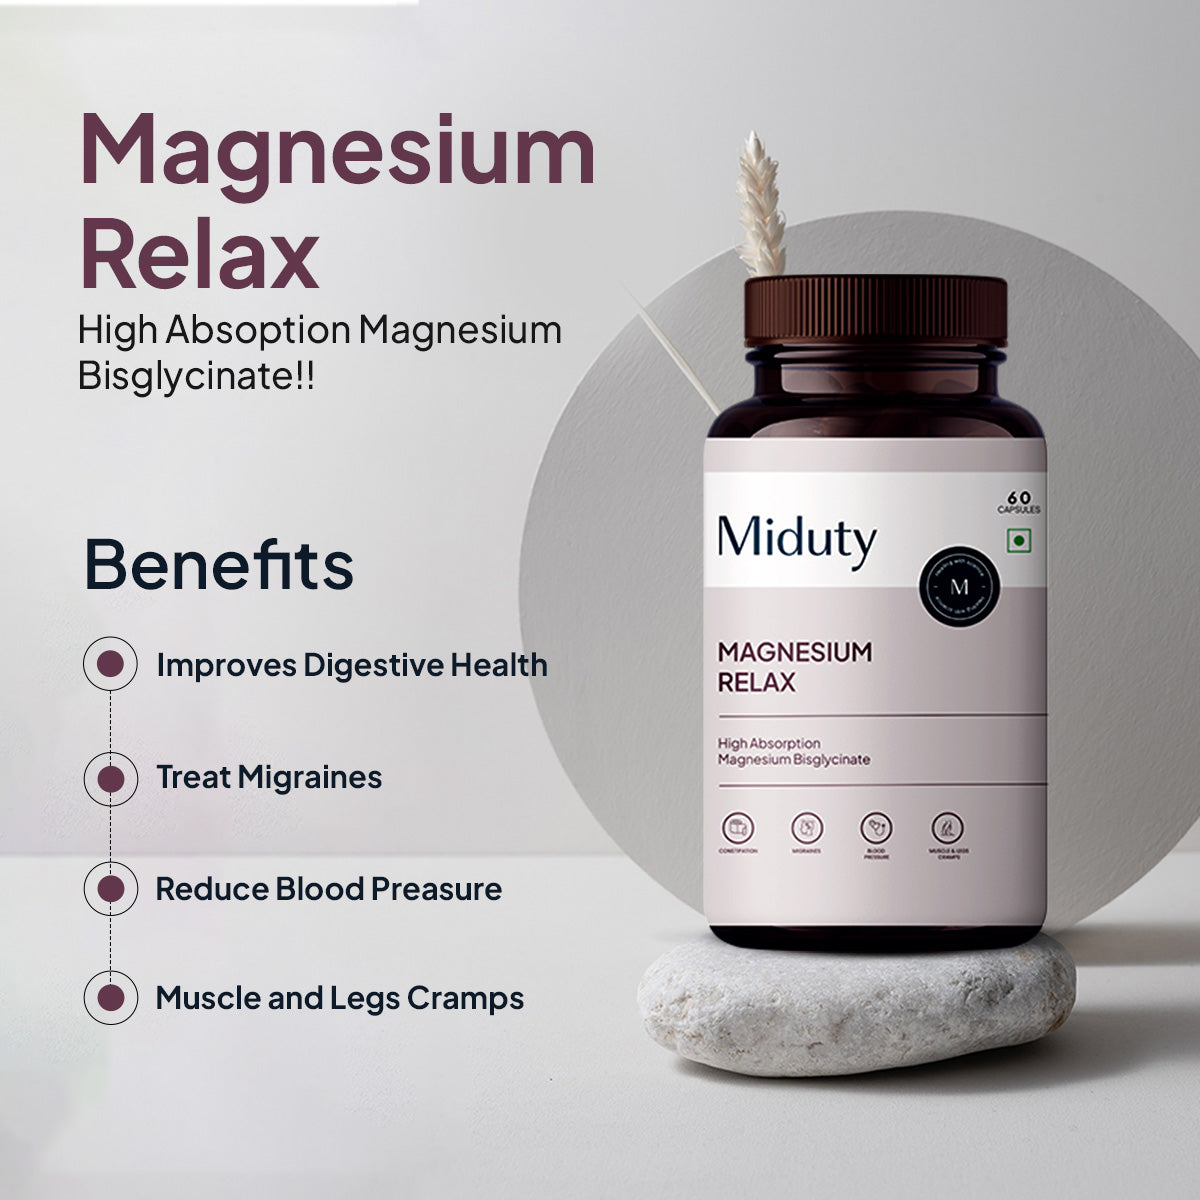 Magnesium Relax